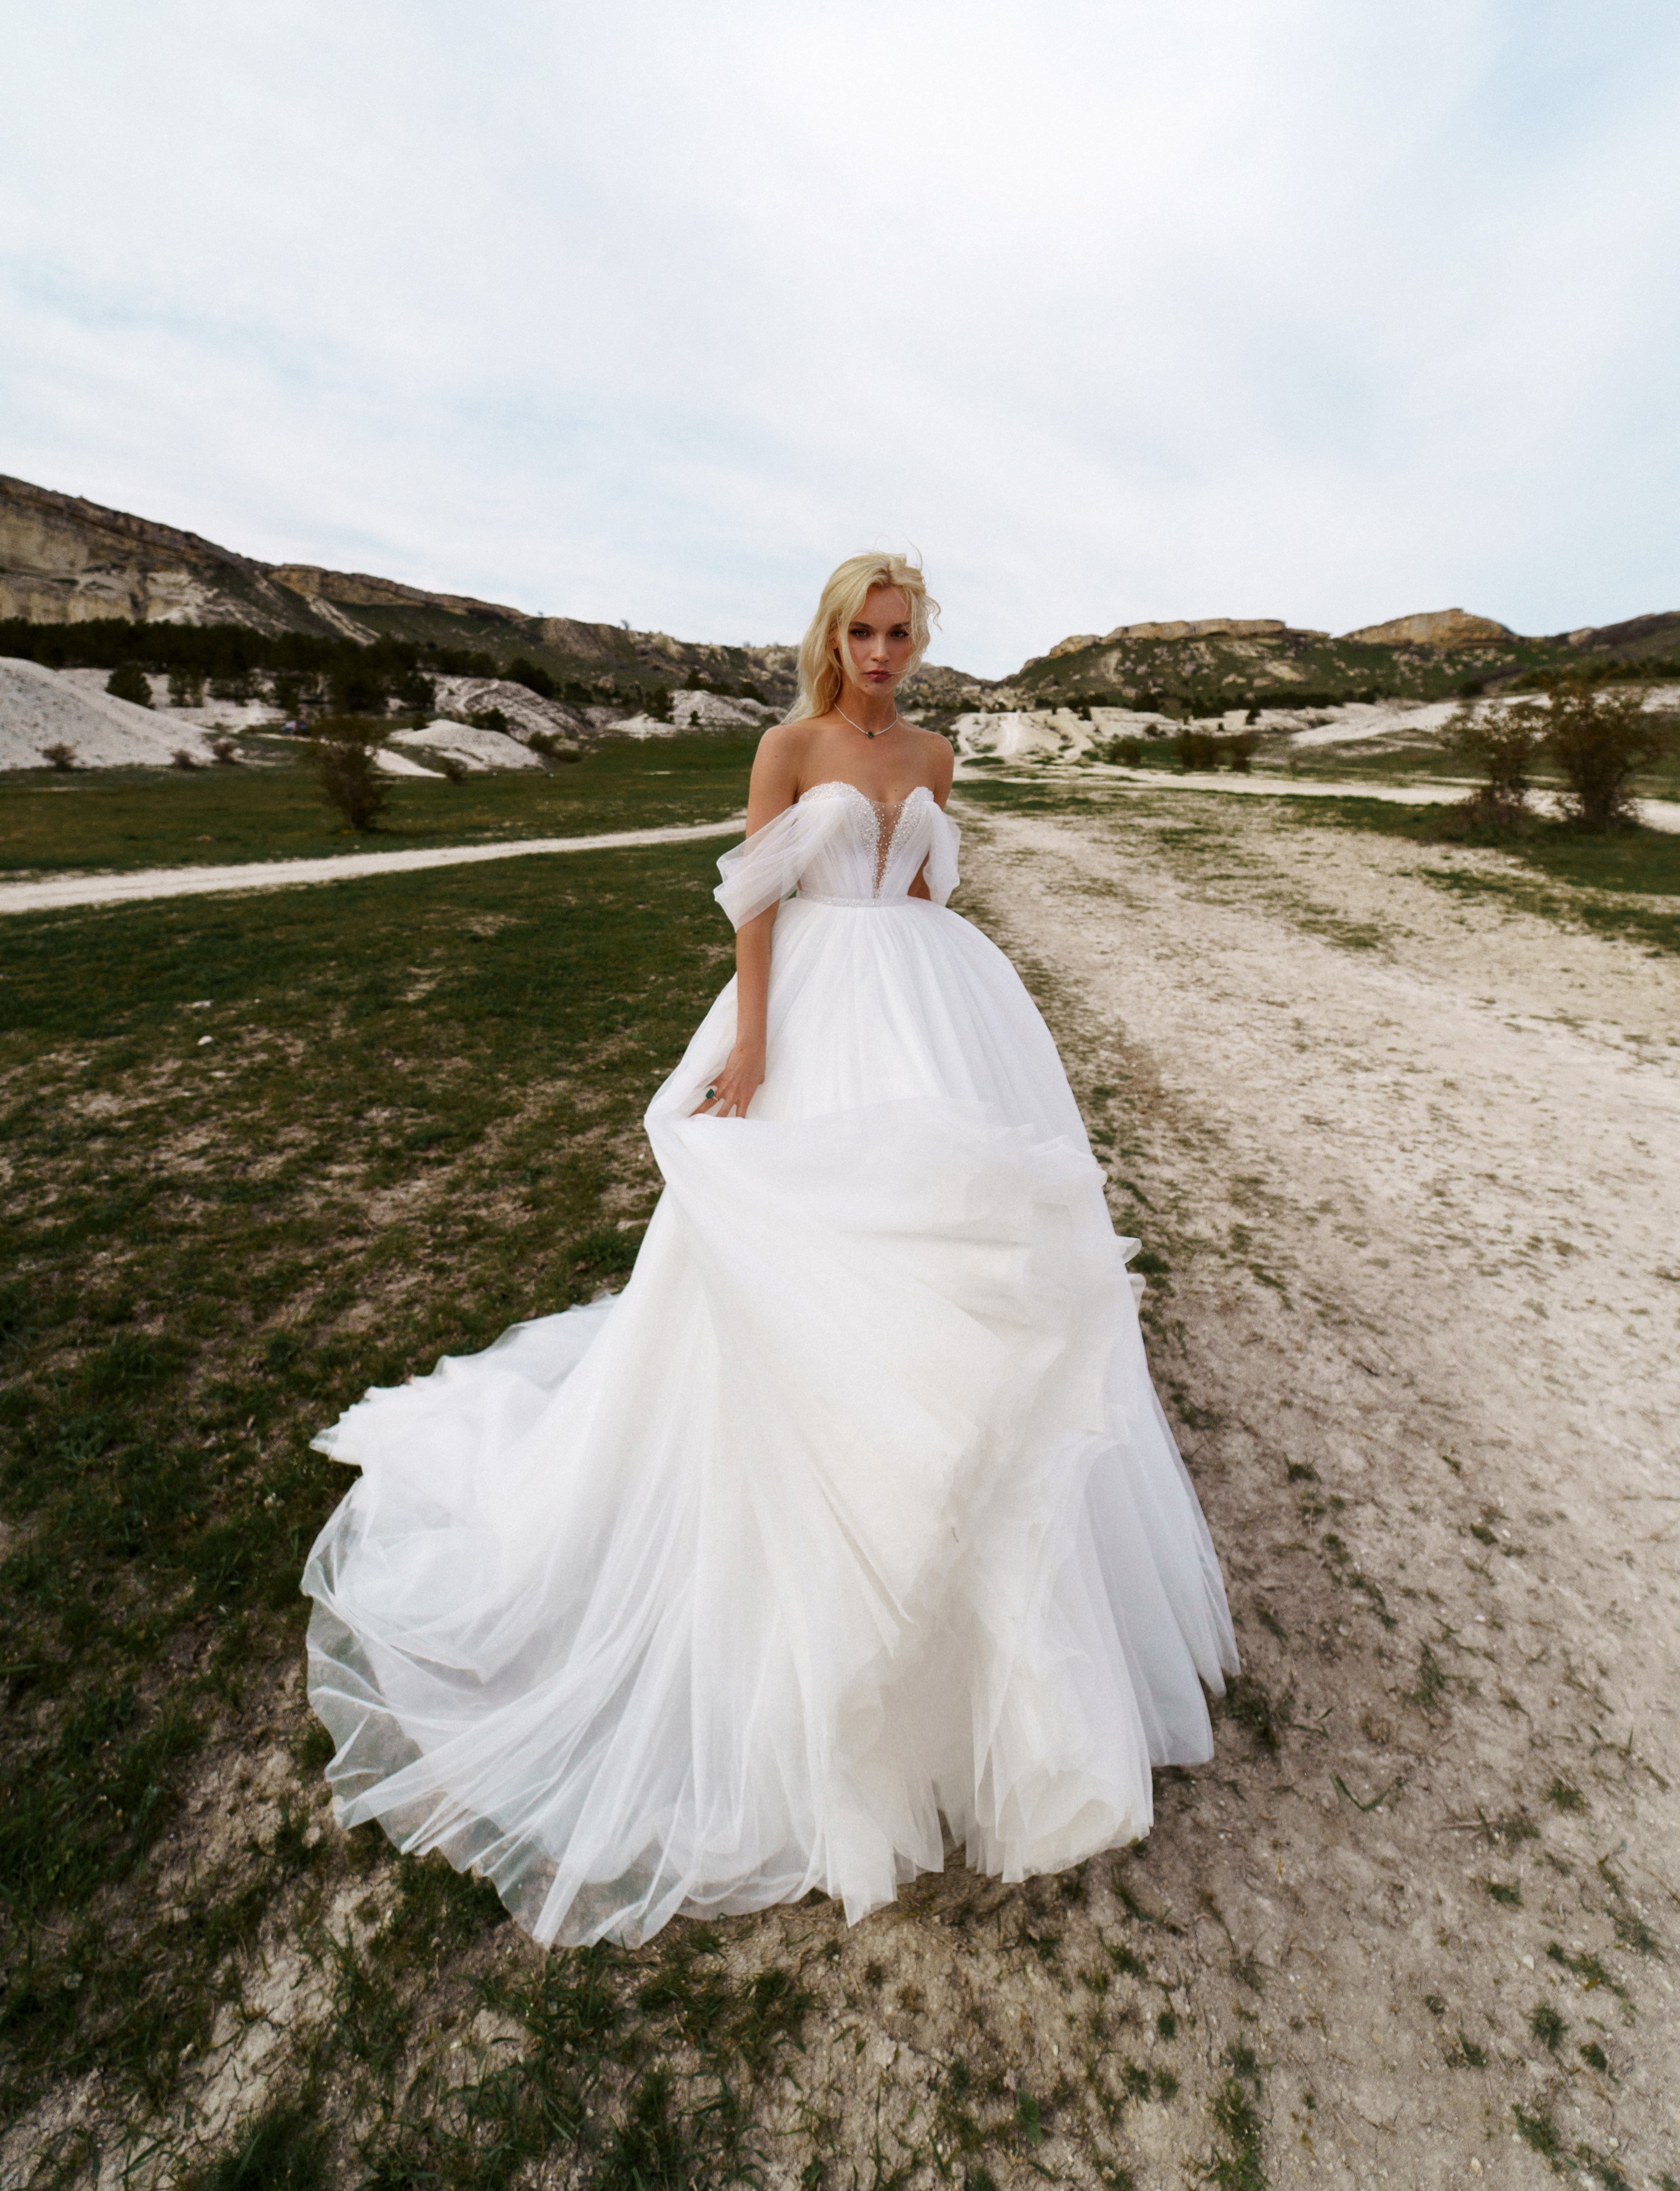 Купить свадебное платье «Фьюжн» Наталья Романова из коллекции Блаш 2022 года в салоне «Мэри Трюфель»